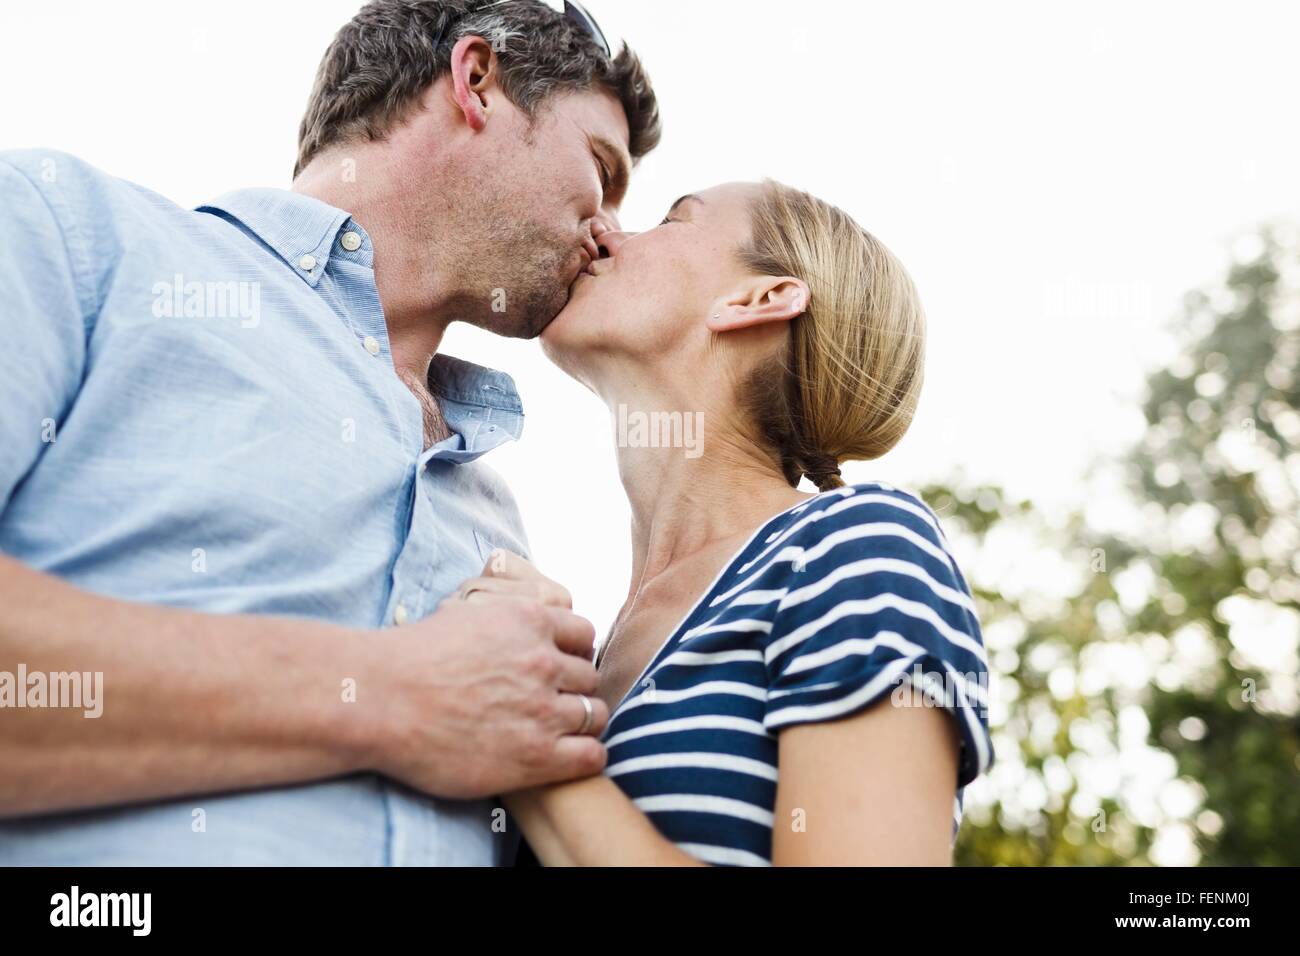 Romantic couple kissing in park Banque D'Images